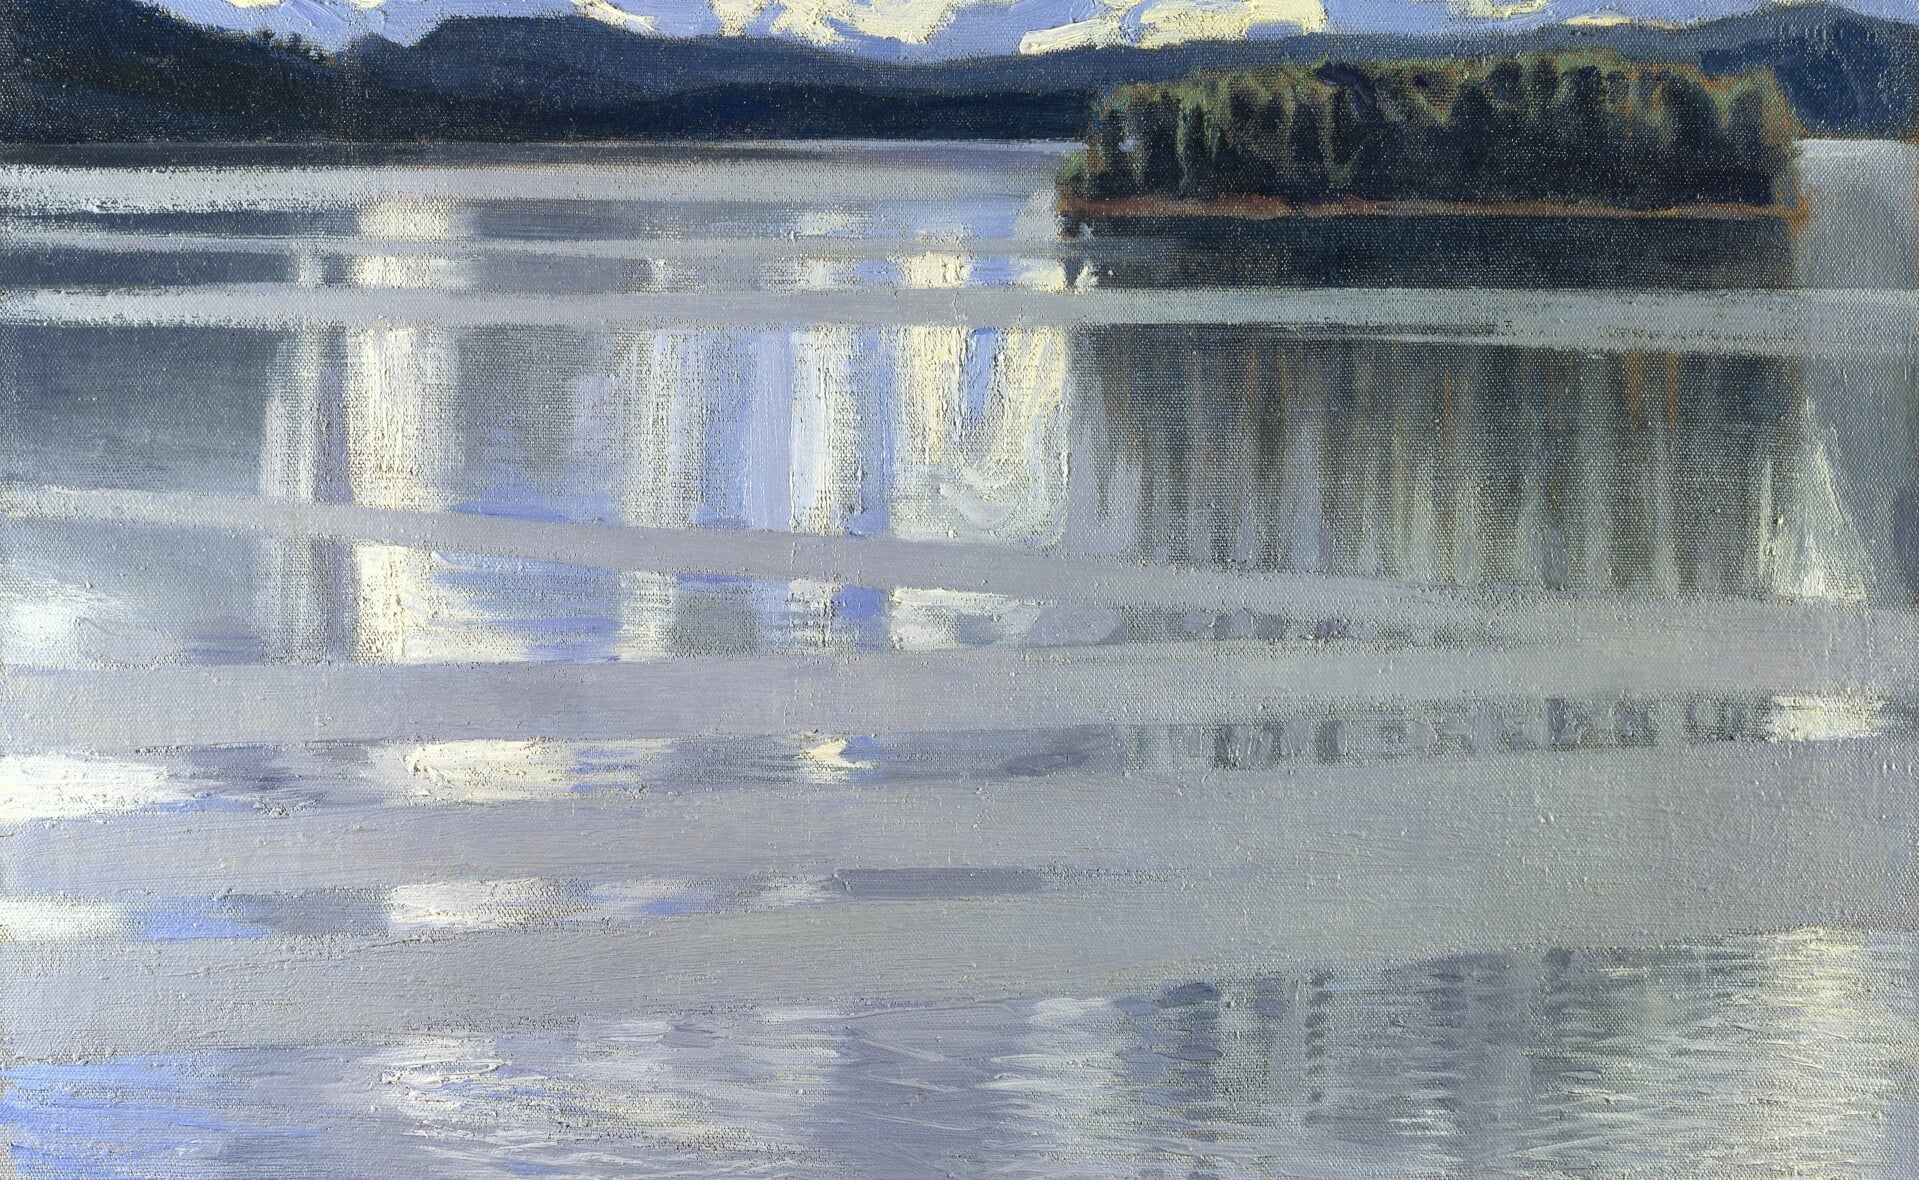 Keitele-meer in Finland, geschilderd door Akseli Gallen-Kallele (1865-193) in 1905.